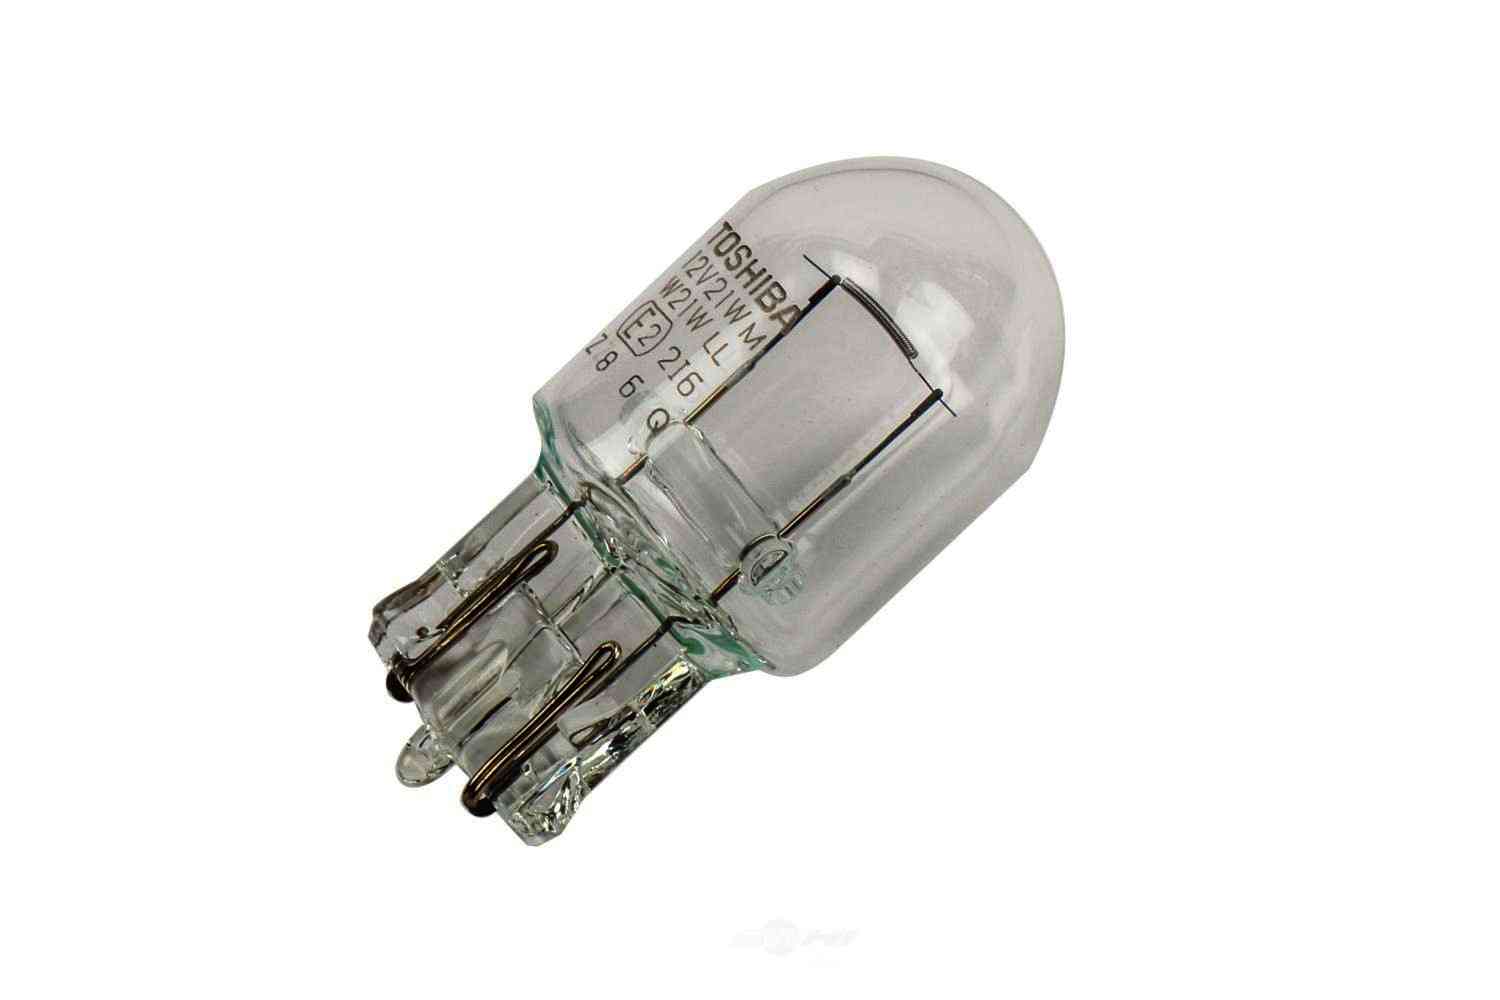 GM GENUINE PARTS CANADA - Back Up Light Bulb - GMC 13596816